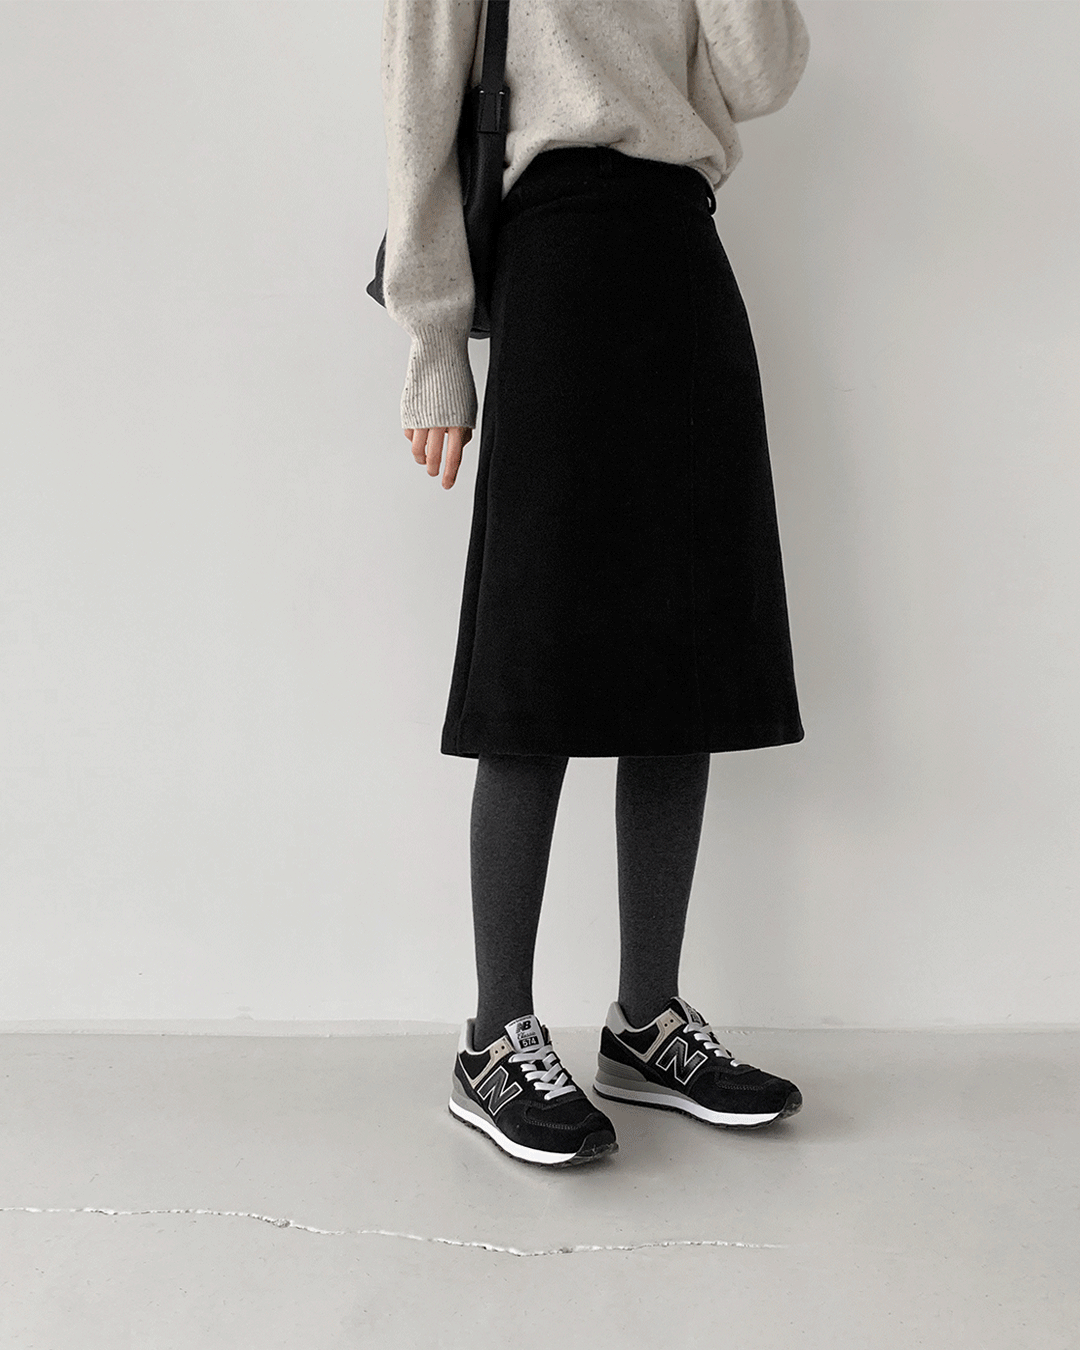 Burn skirt